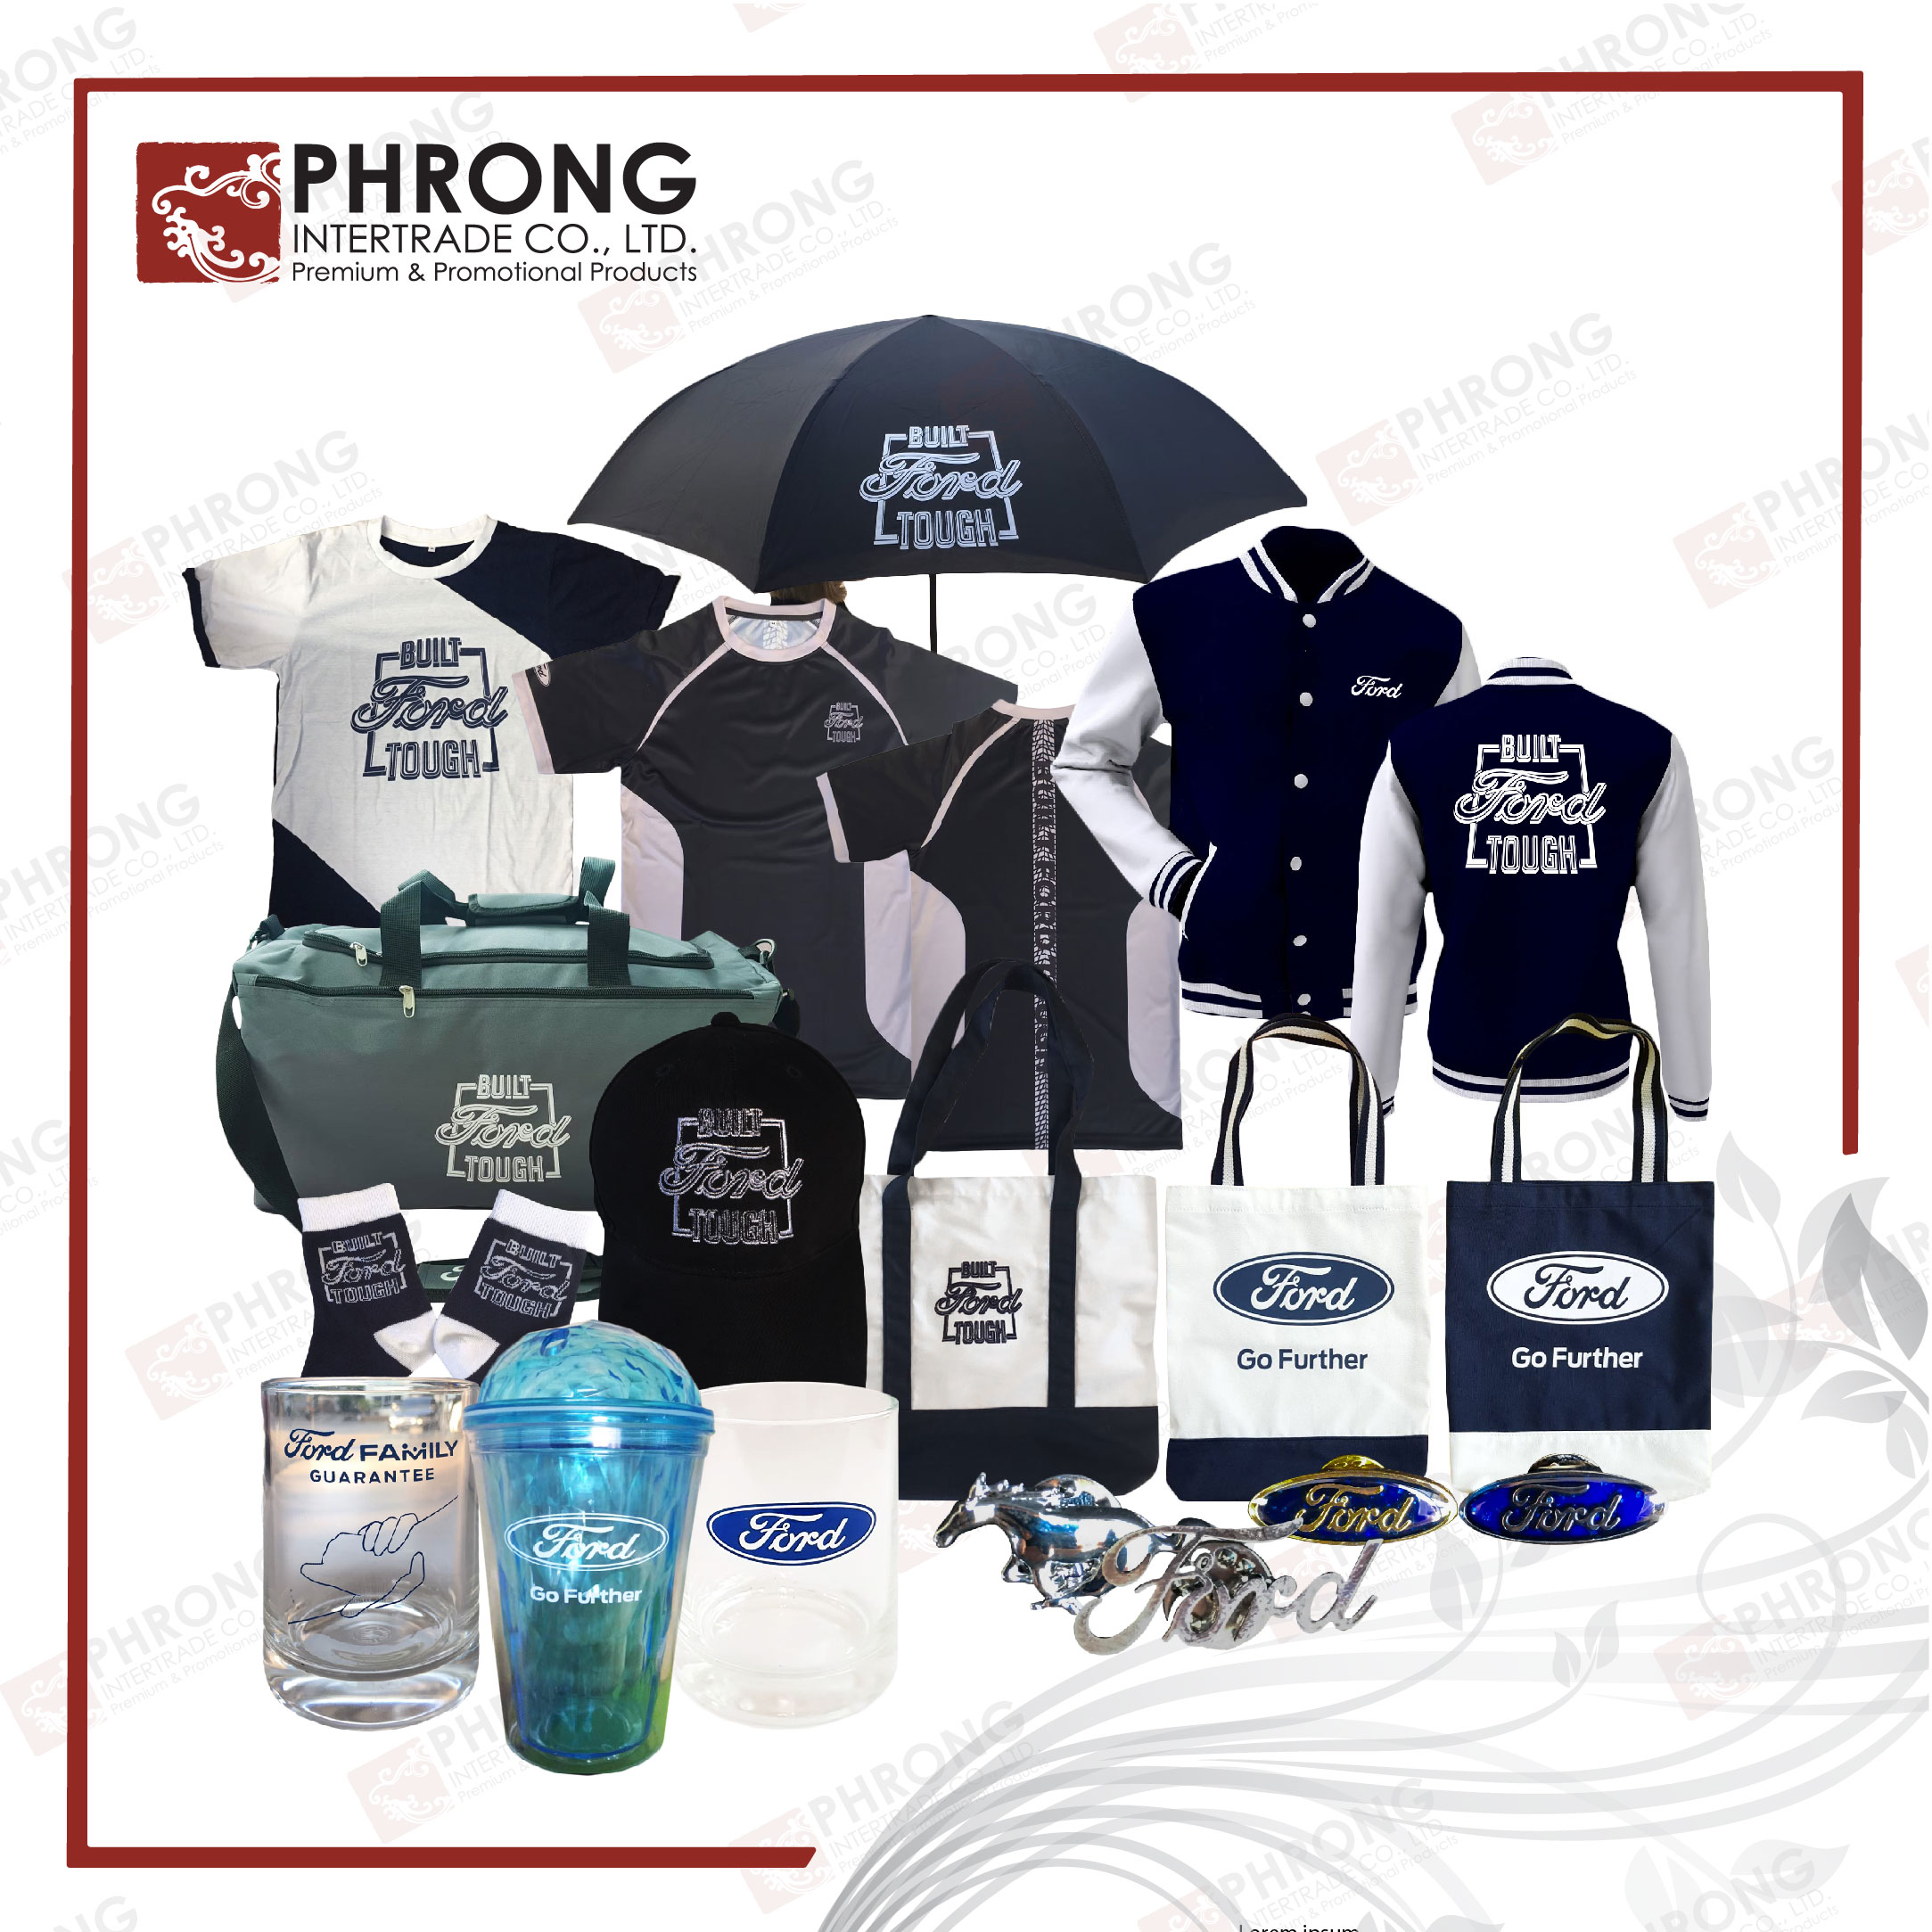 ของพรีเมี่ยมeco #Phrong #PhrongIntertrade #ของพรีเมี่ยมรักษ์โลก #งานสั่งทำ งานสั่งผลิด สั่งผลิของพรีเมี่ยม #ผลิตของแจก #ของแจกเก๋ # พรีเมี่ยม #promotionalproducts #promotionalmerchandise #ของพรีเมี่ยม #สินค้าของลูกค้า #ส่งเสริมการขาย #สินค้าพรีเมี่ยมของที่ #สินค้าส่งเสริมการขาย #ของช่วยยอดขายสินค้า #ของฝากของแท้ #ของฝาก #สินค้าแจกพนักงาน #ของขวัญปีใหม่ #ของพรีเบียมเก๋ ของพรีพรีเมี่ยมดี #พรีใบเมียมกิ๊ฟ #greenproduct #ecoproduct #ecogift #gogreen #greengift #greenpromo #FORD